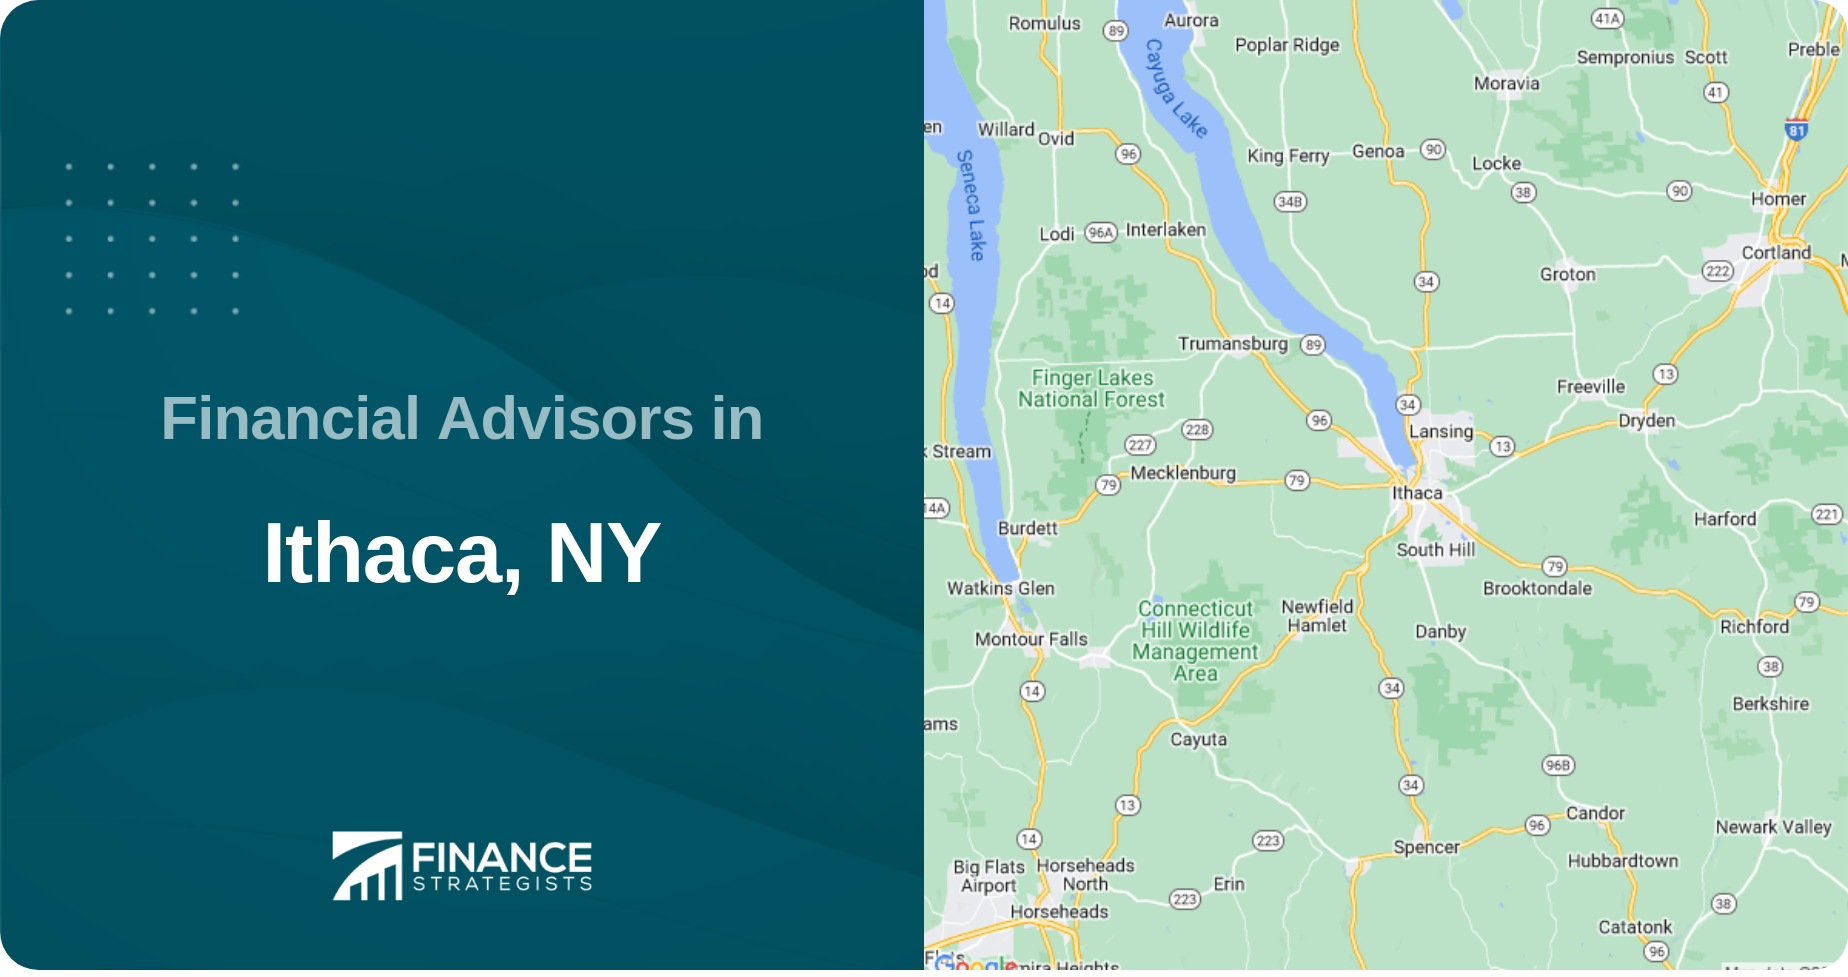 Financial Advisors in Ithaca, NY